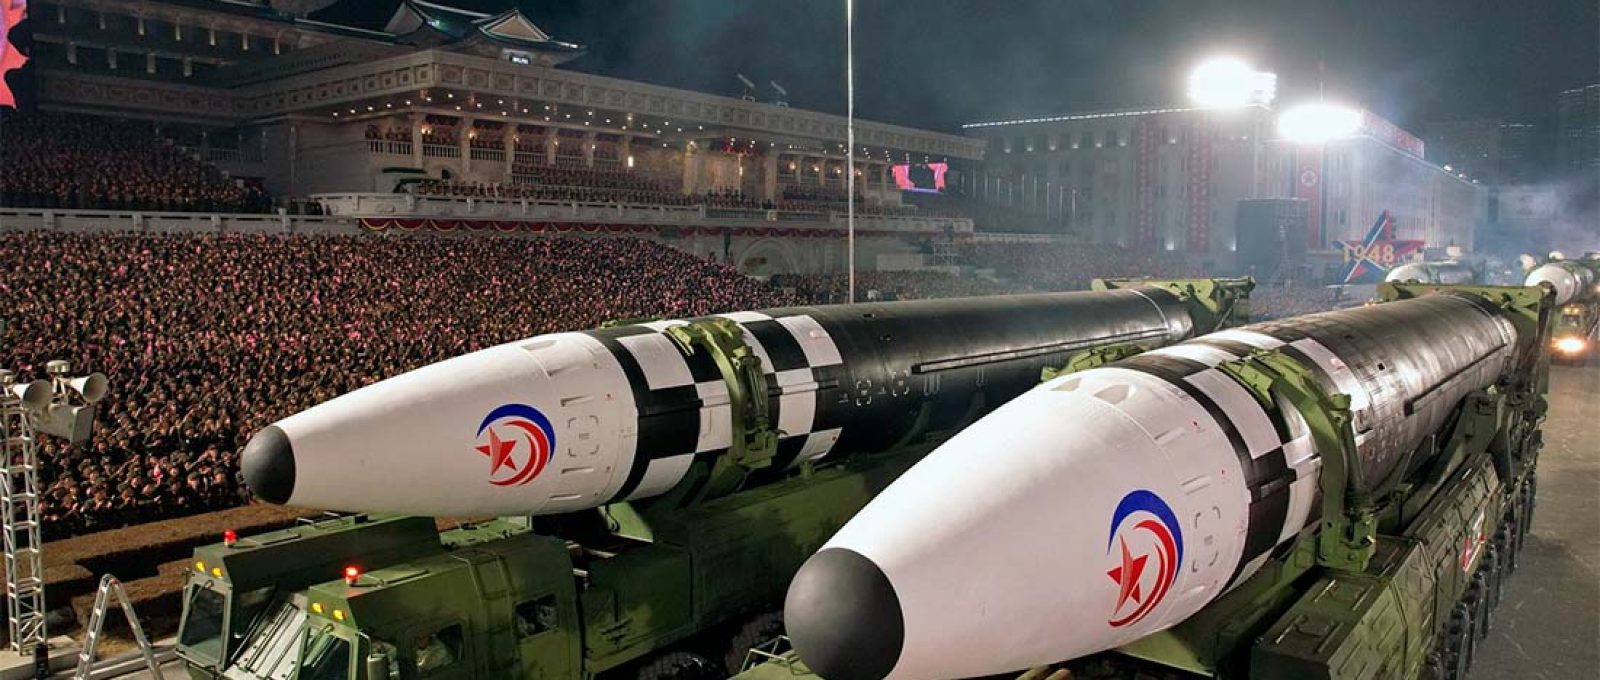 Mísseis norte-coreanos em parada militar (Reuters).